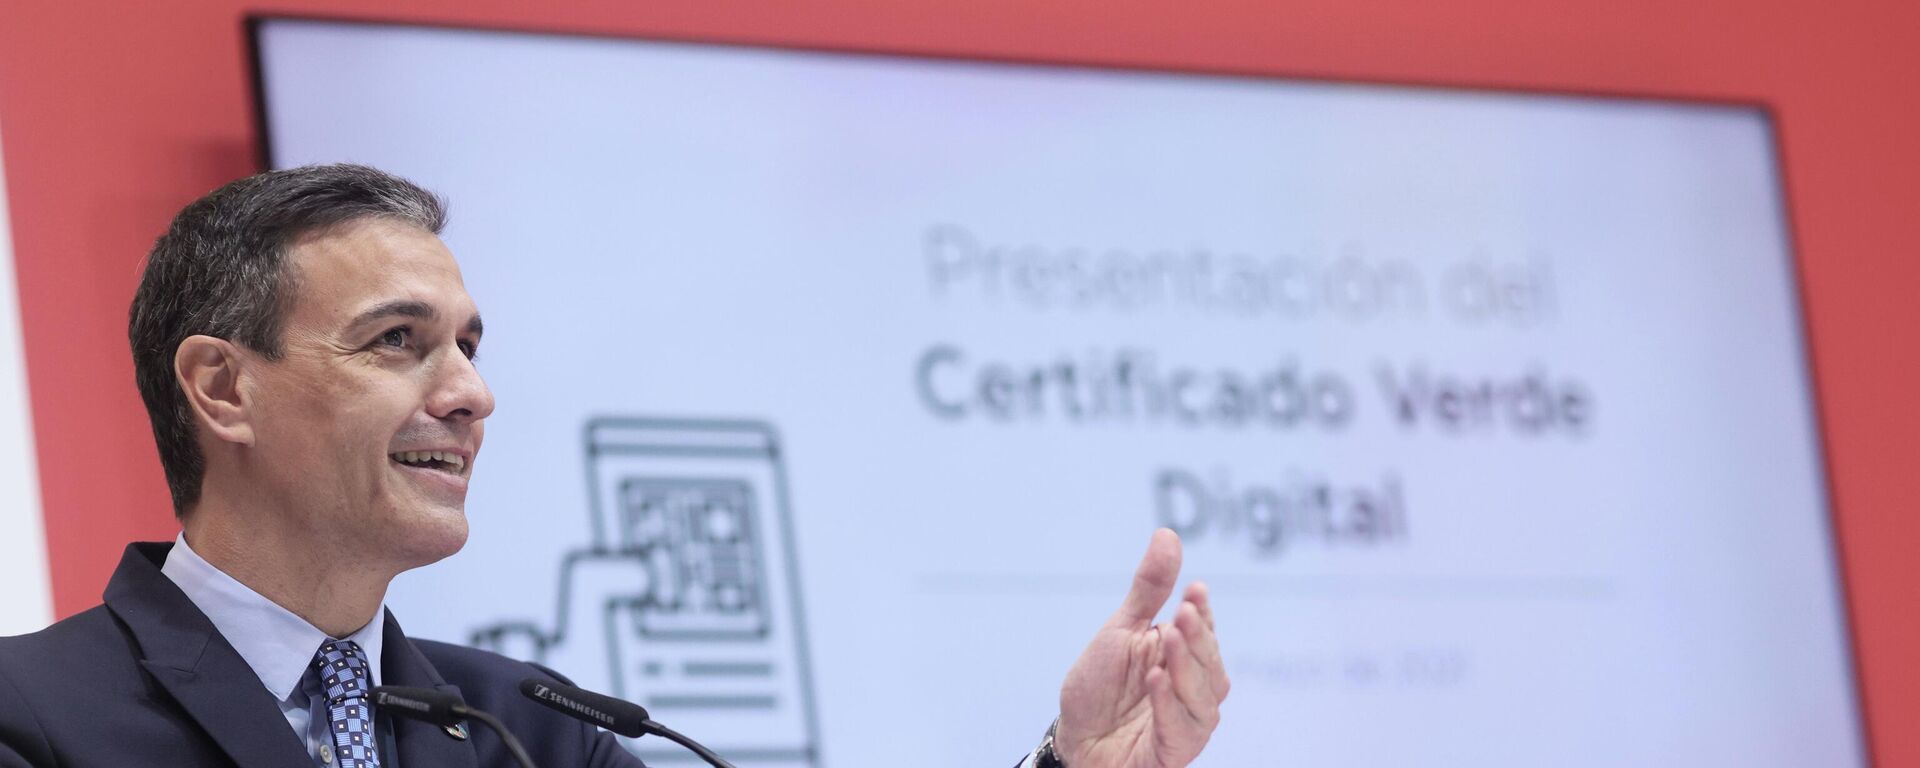 El presidente del Gobierno, Pedro Sánchez, en la presentación del certificado verde digital en Fitur - Sputnik Mundo, 1920, 21.05.2021